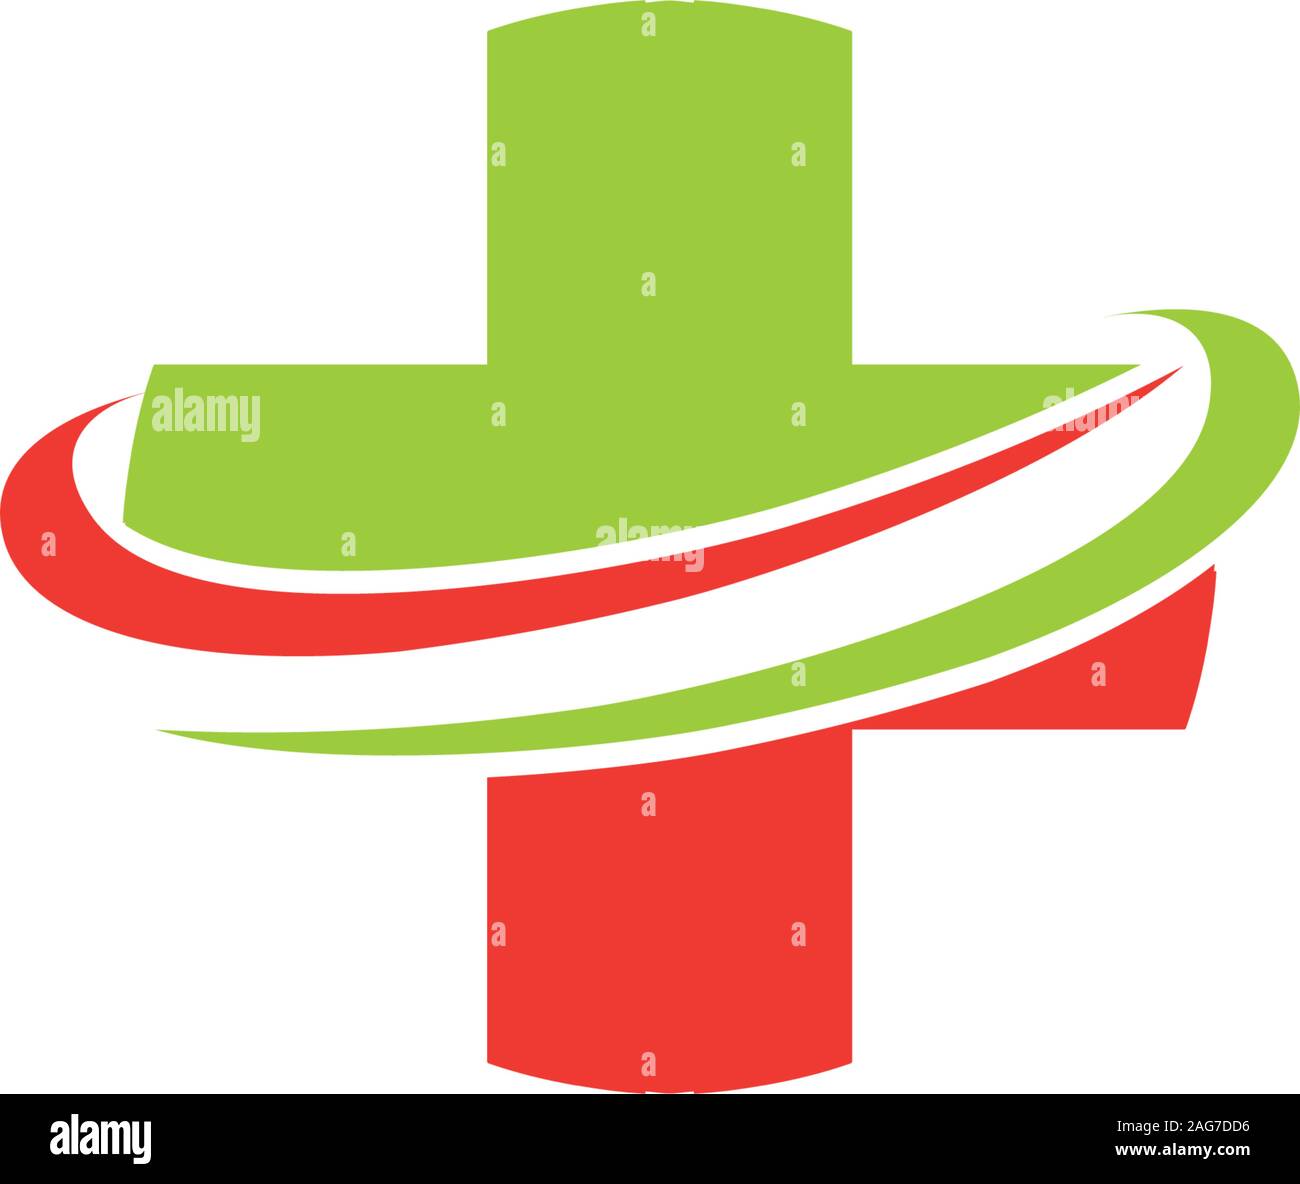 Red Green Cross medizinische Einrichtungen für medizinische, Krankenhaus, Krankenhäuser, Apotheken, Rehabilitationseinrichtungen, Nächstenliebe, veterenarnyh Kliniken. Hilfe Stock Vektor